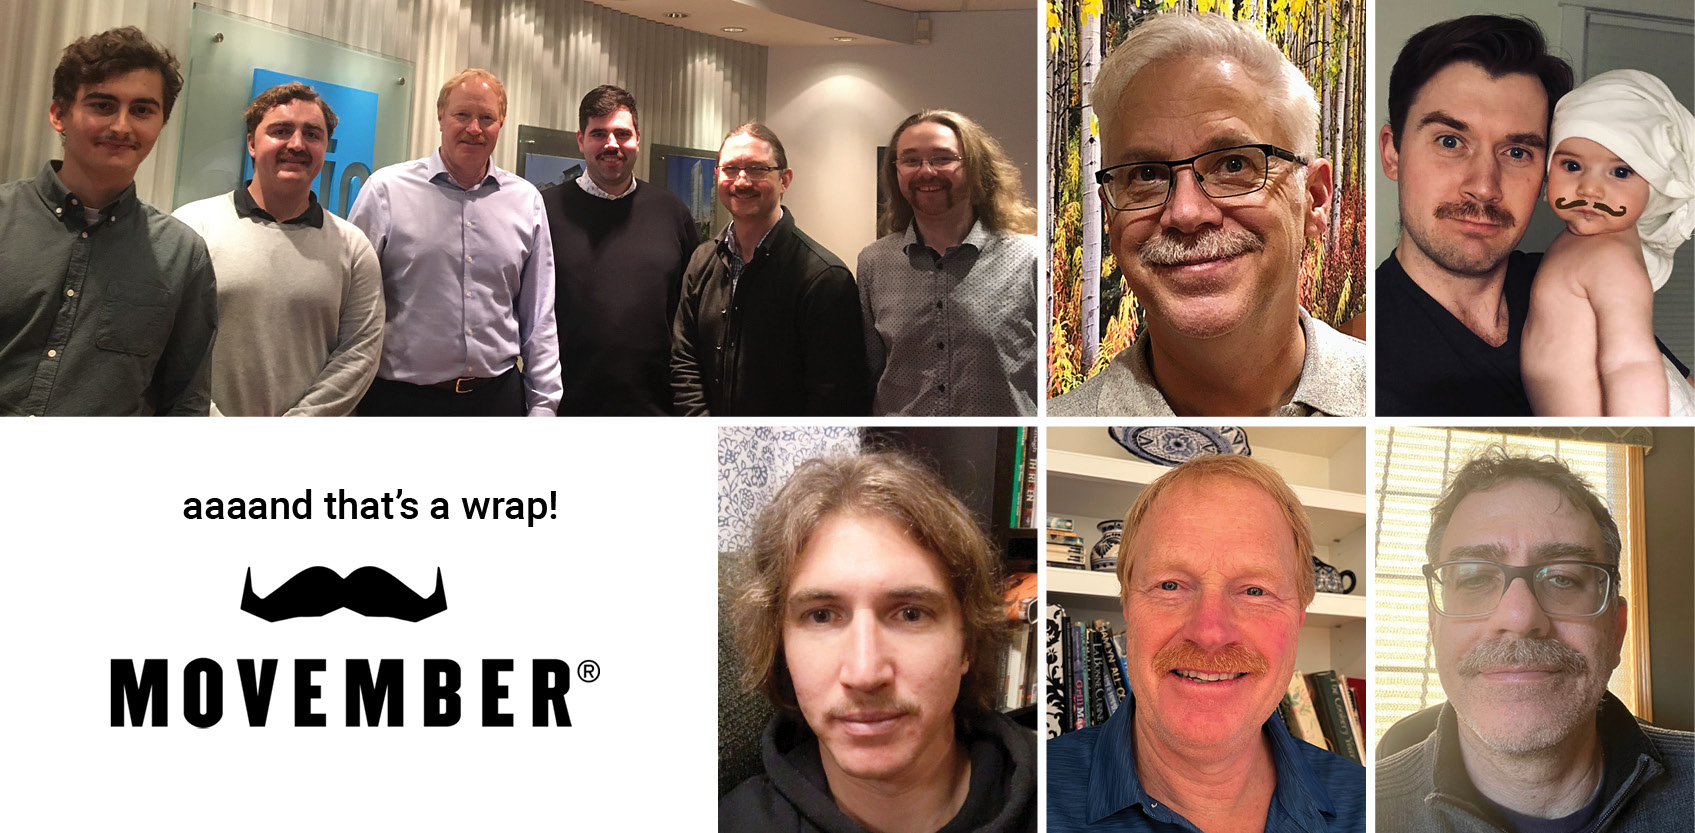 RJC’s Movember Team Raises Funds for Men’s Health